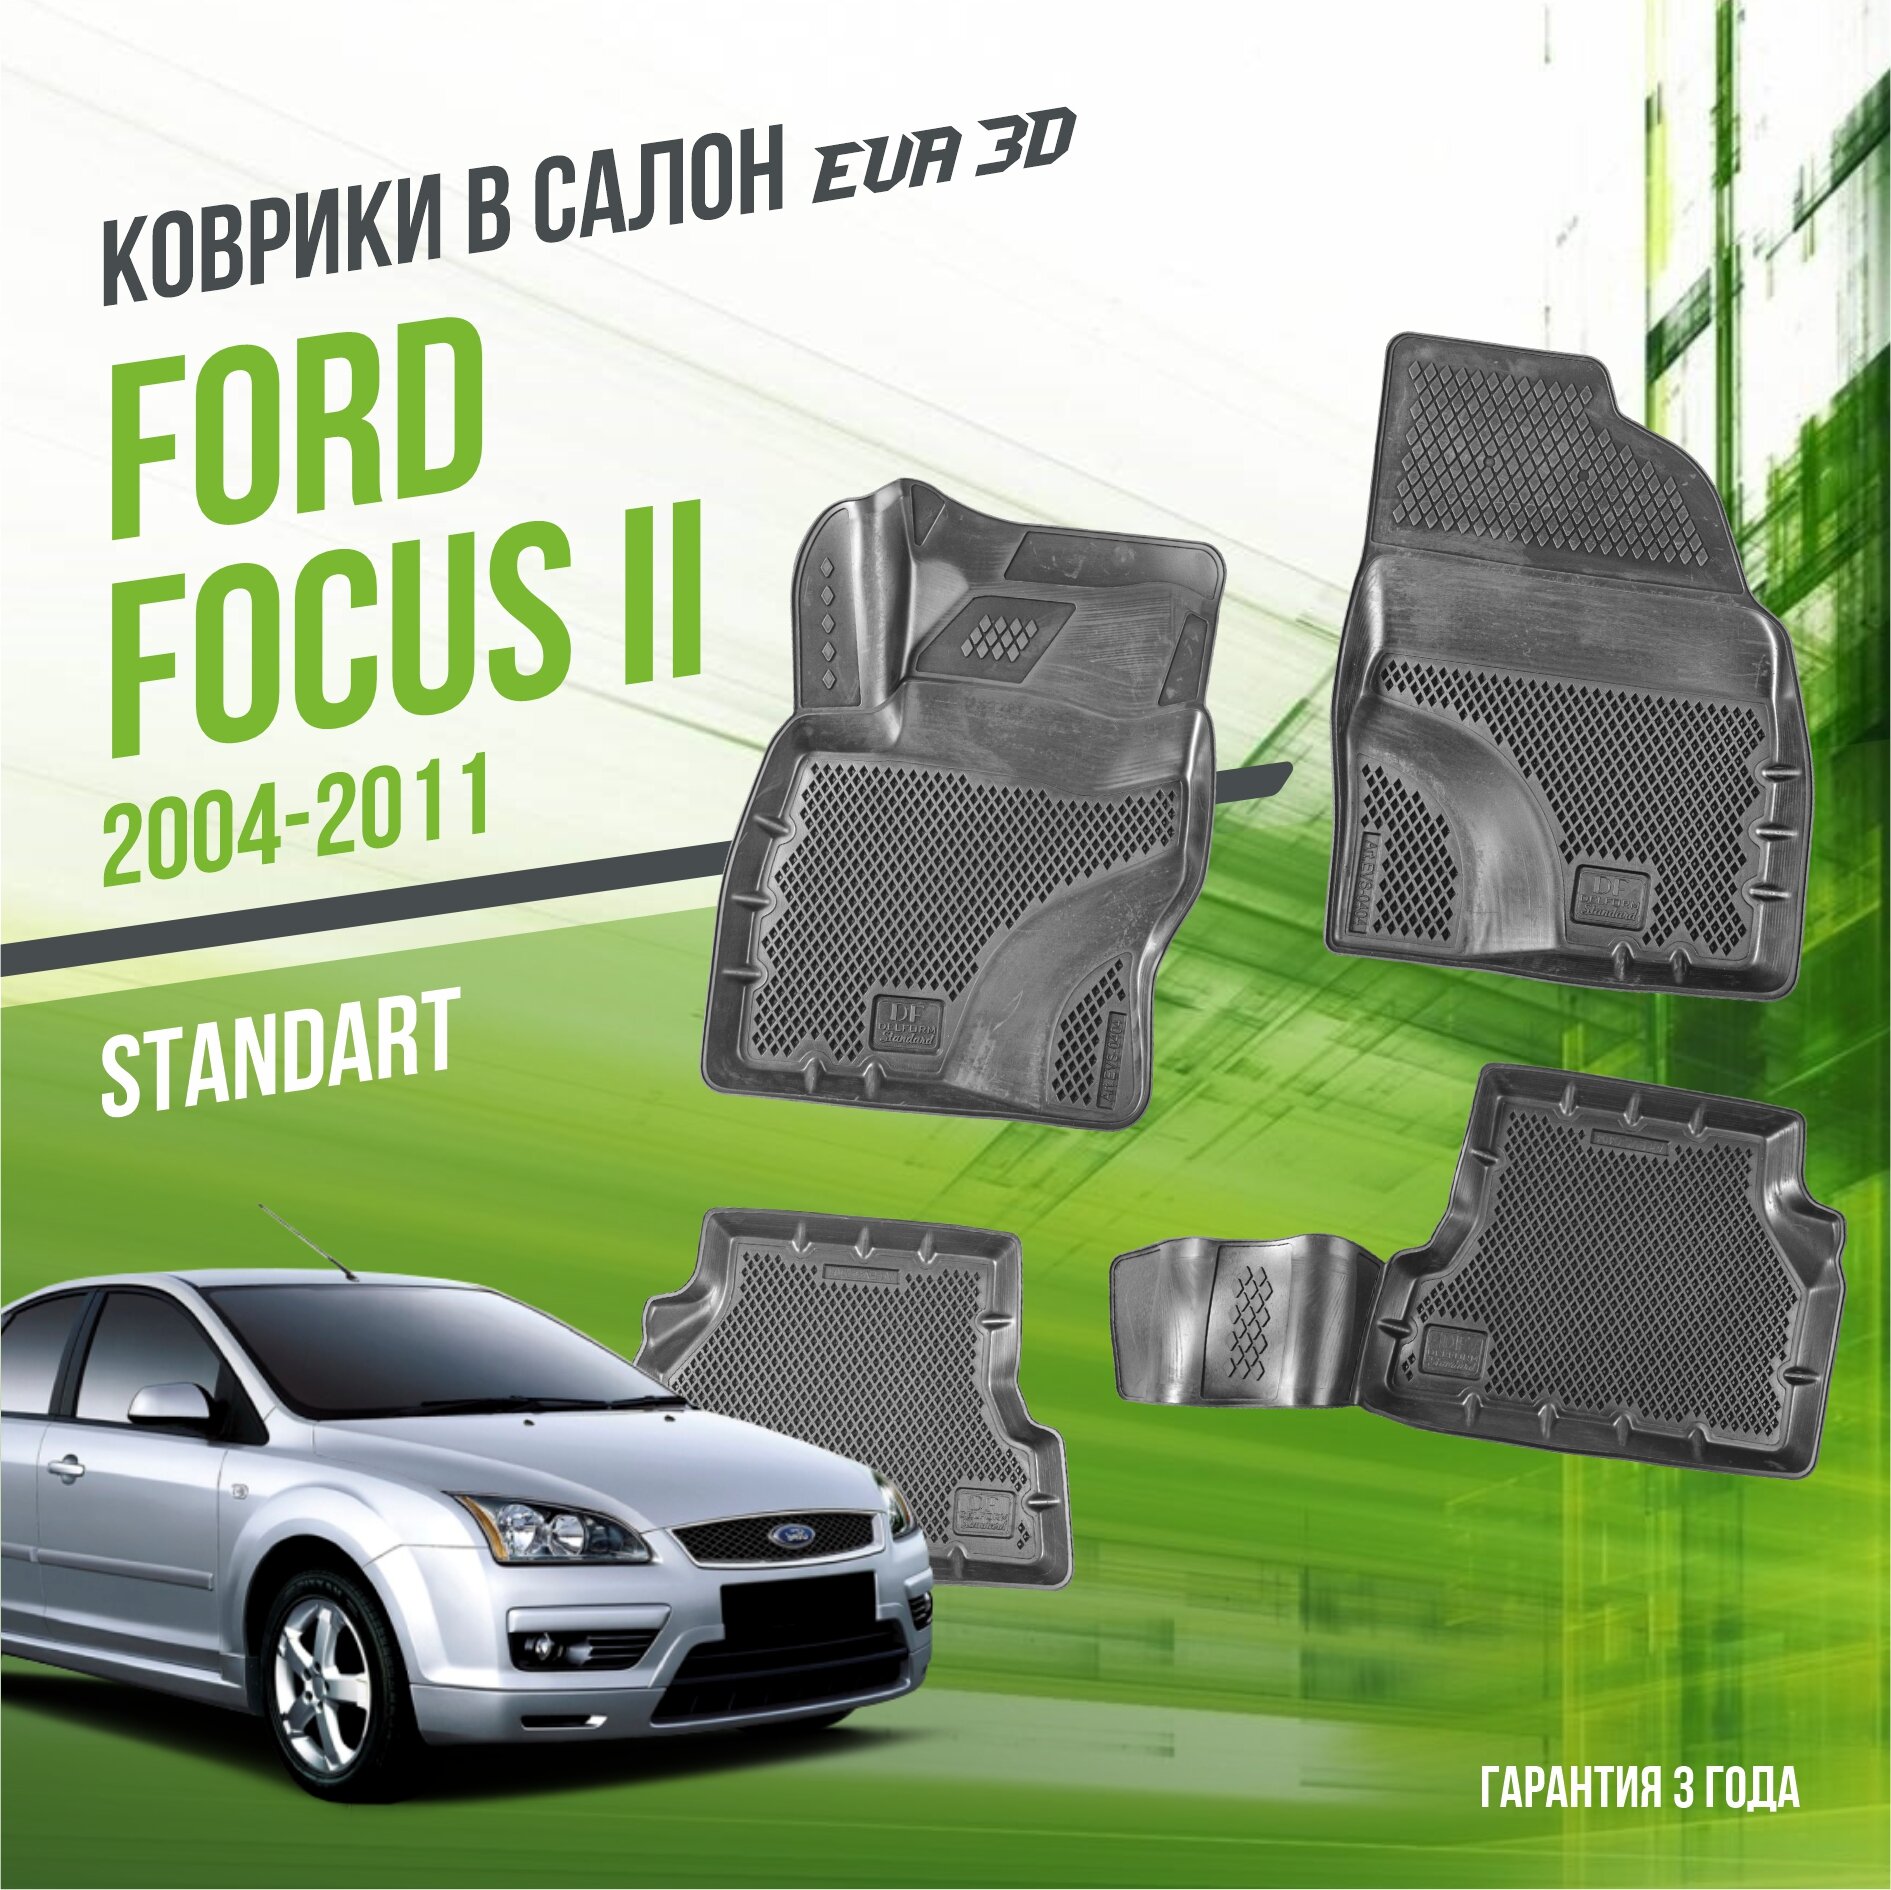 Коврики в салон Ford Focus II (2004-2011) / Форд Фокус 2 / набор "Standart" ковров DelForm с бортами и ячейками EVA 3D / ЭВА 3Д